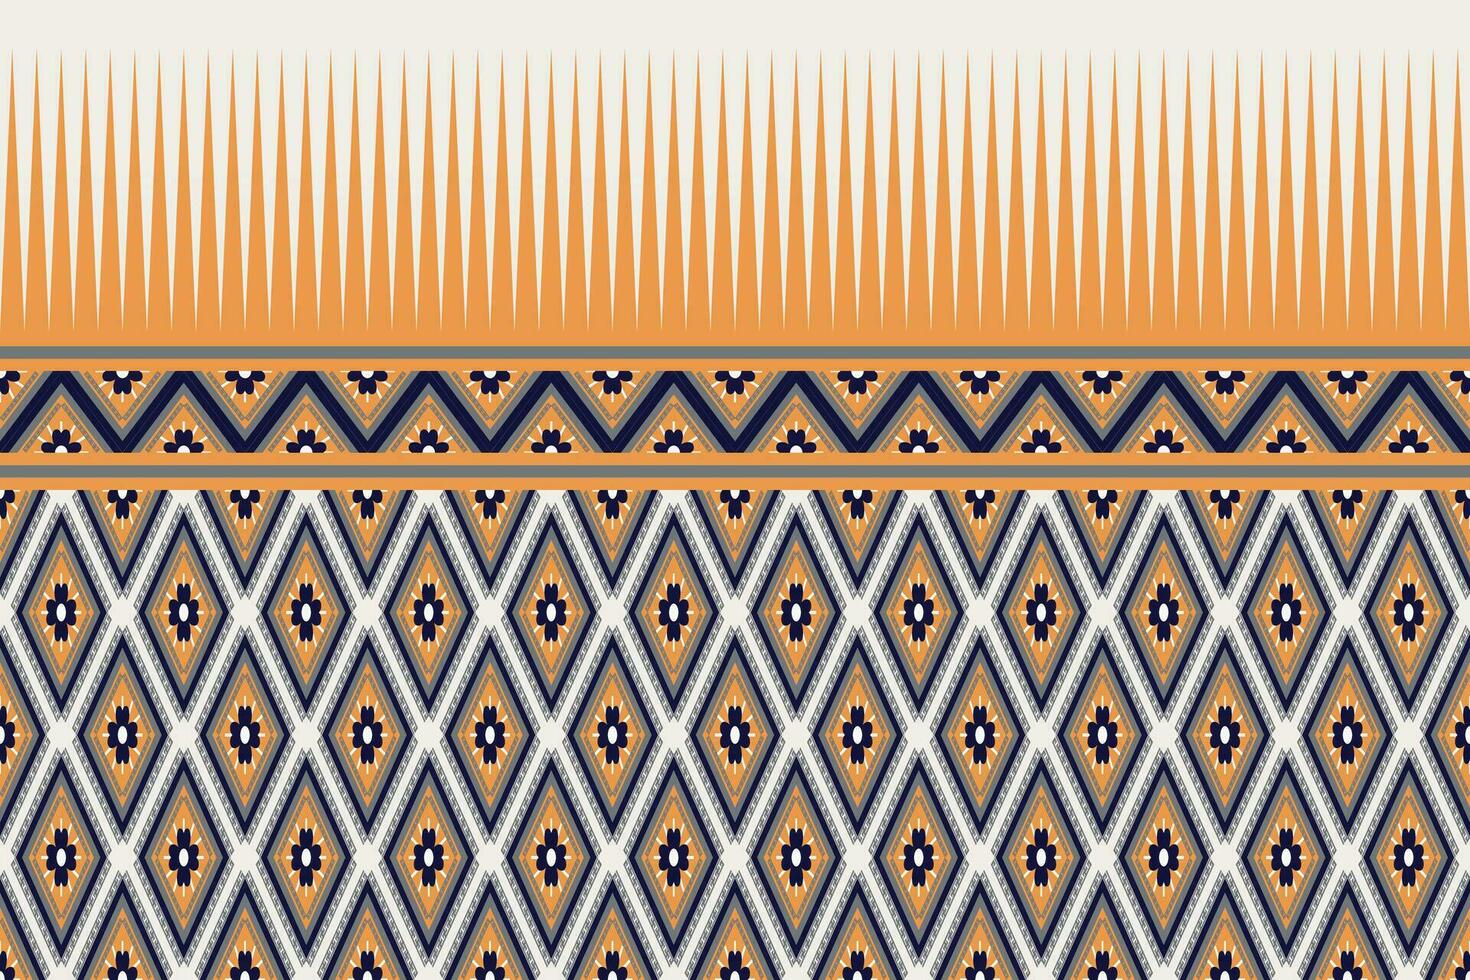 geometrische etnische patroon traditioneel ontwerp voor achtergrond,tapijt,behang,kleding,inwikkeling,batik,stof,sarong,vector illustratie borduurstijl. vector